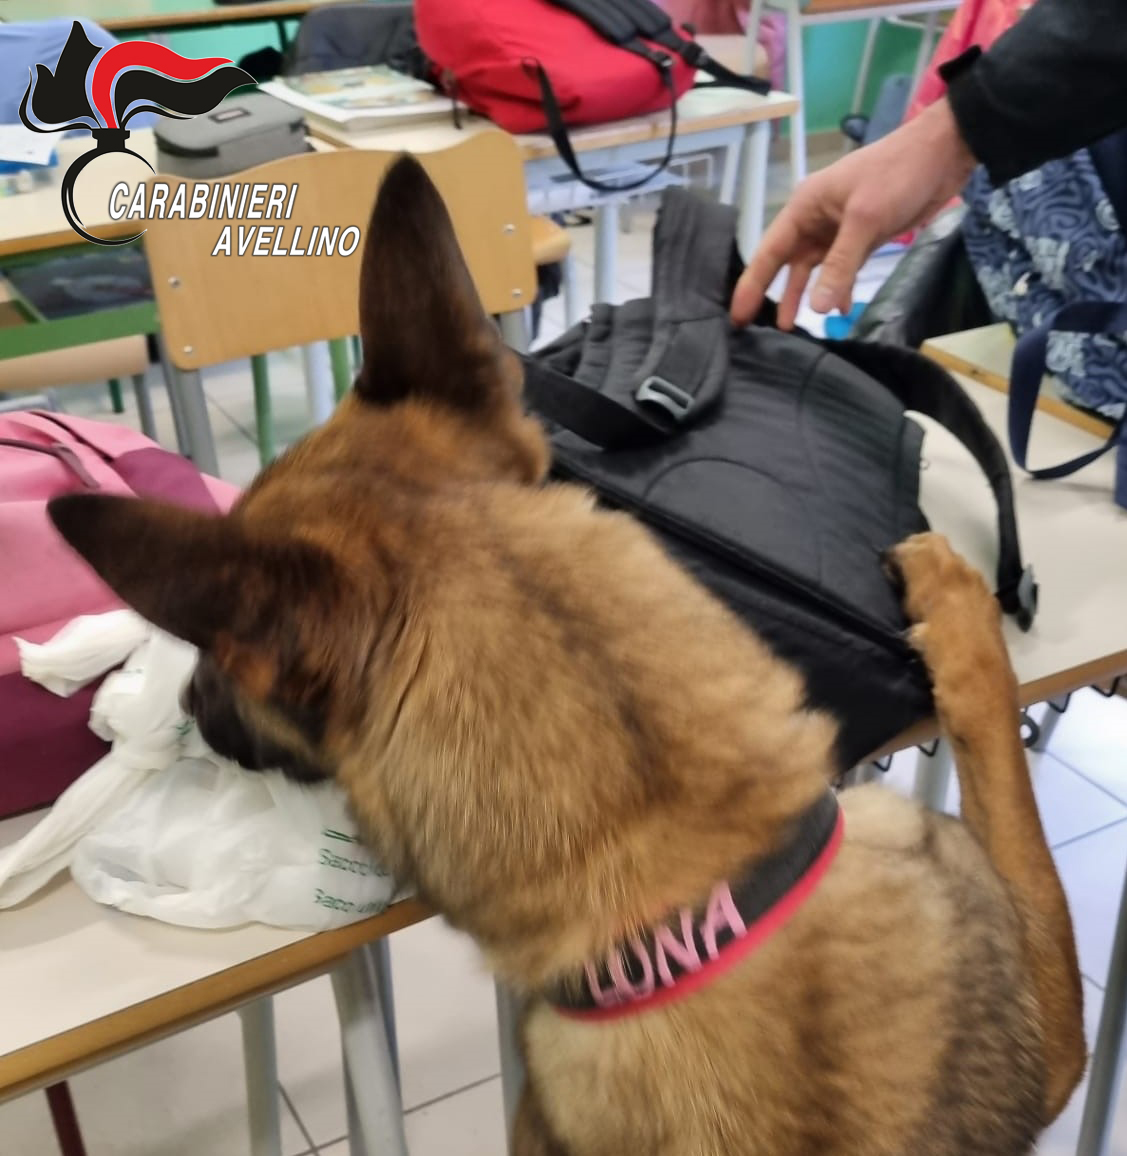 Ariano Irpino| Il fiuto dei cani antidroga porta al sequestro di hashish in due scuole superiori